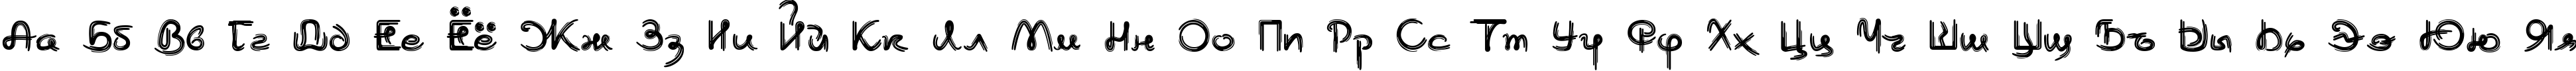 Пример написания русского алфавита шрифтом Burlak